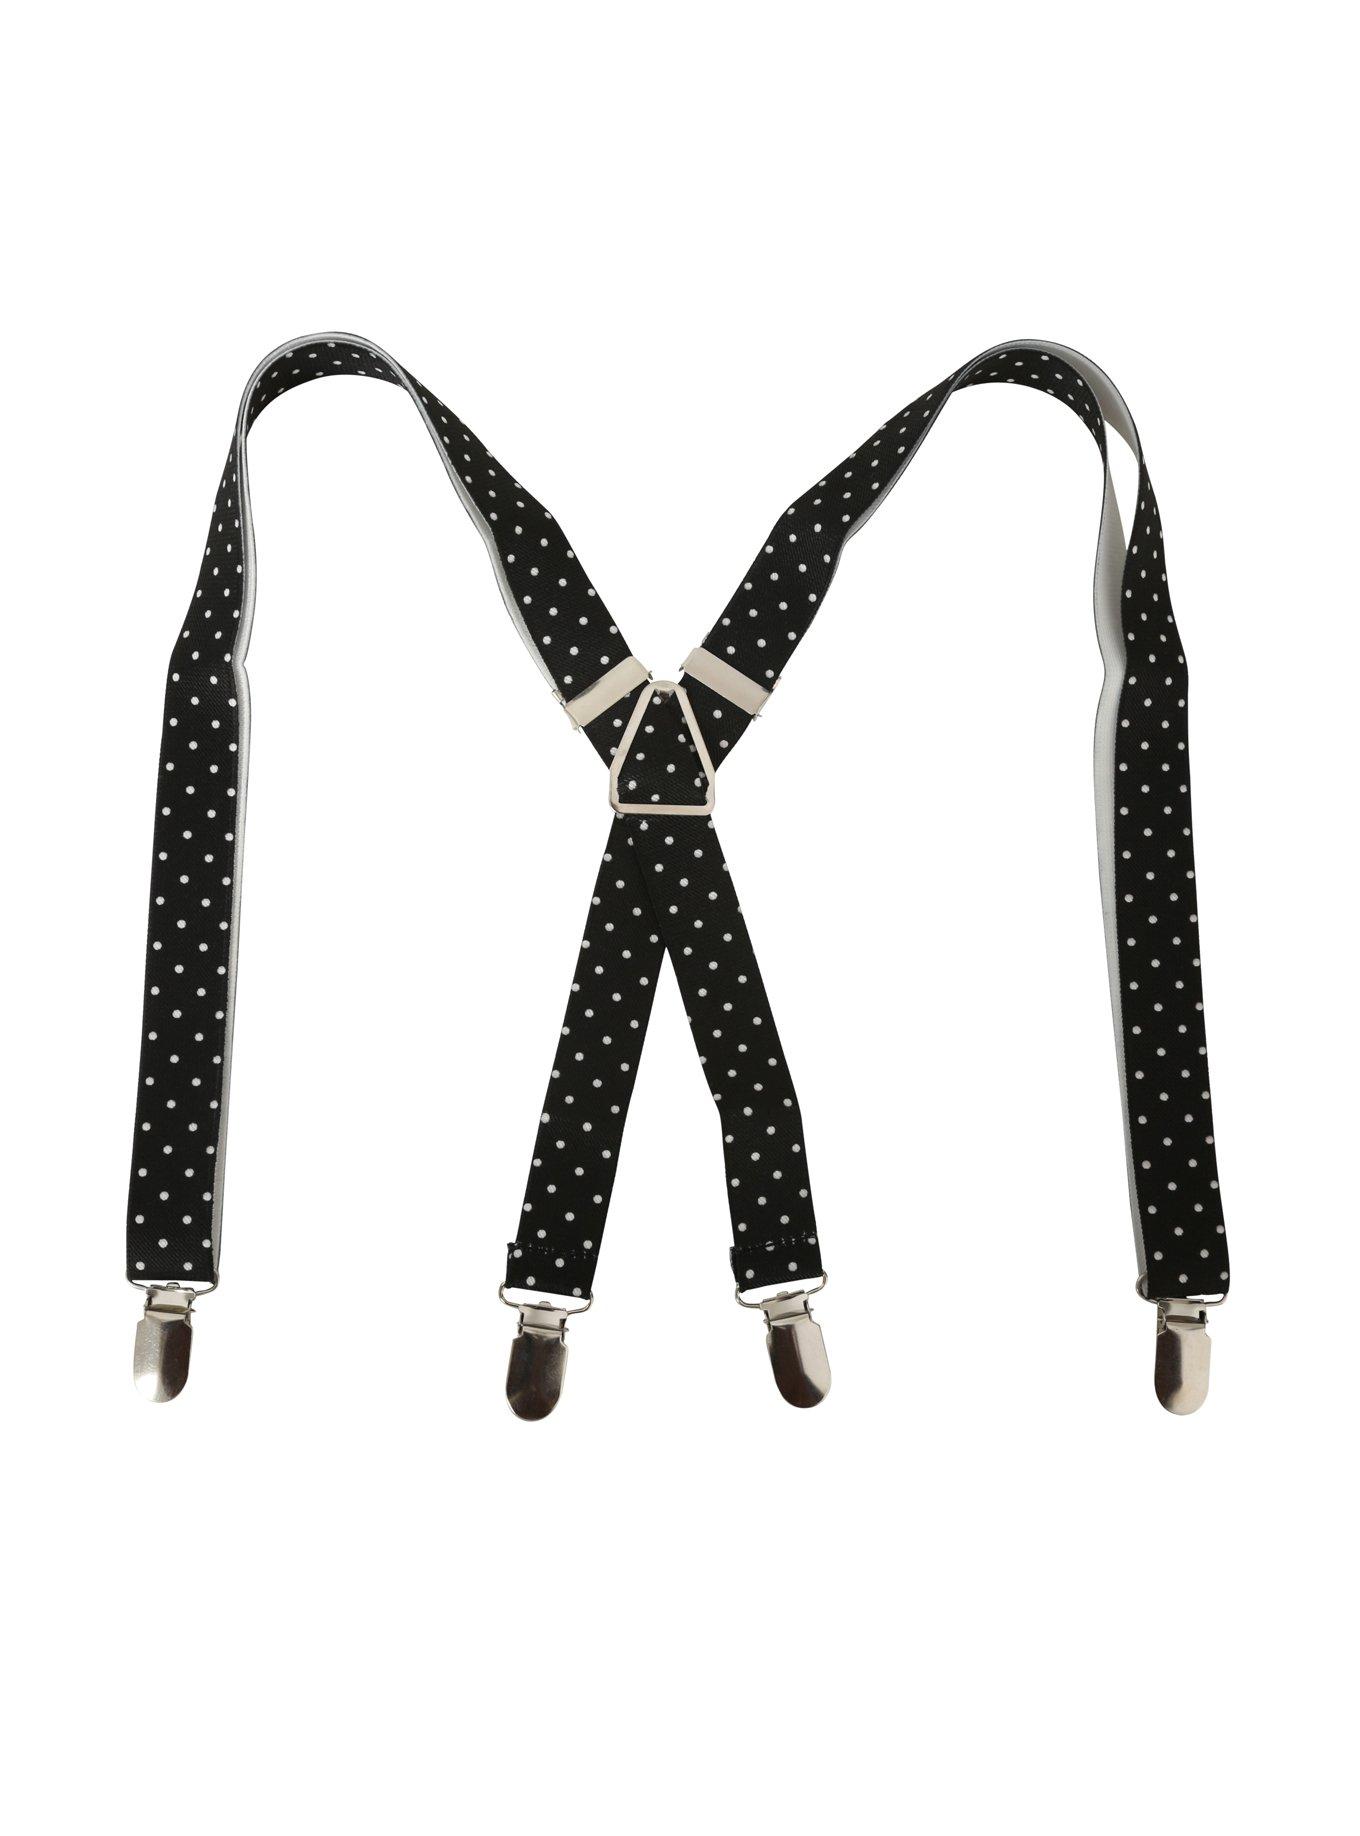 Black & White Polka Dot Suspenders, , alternate